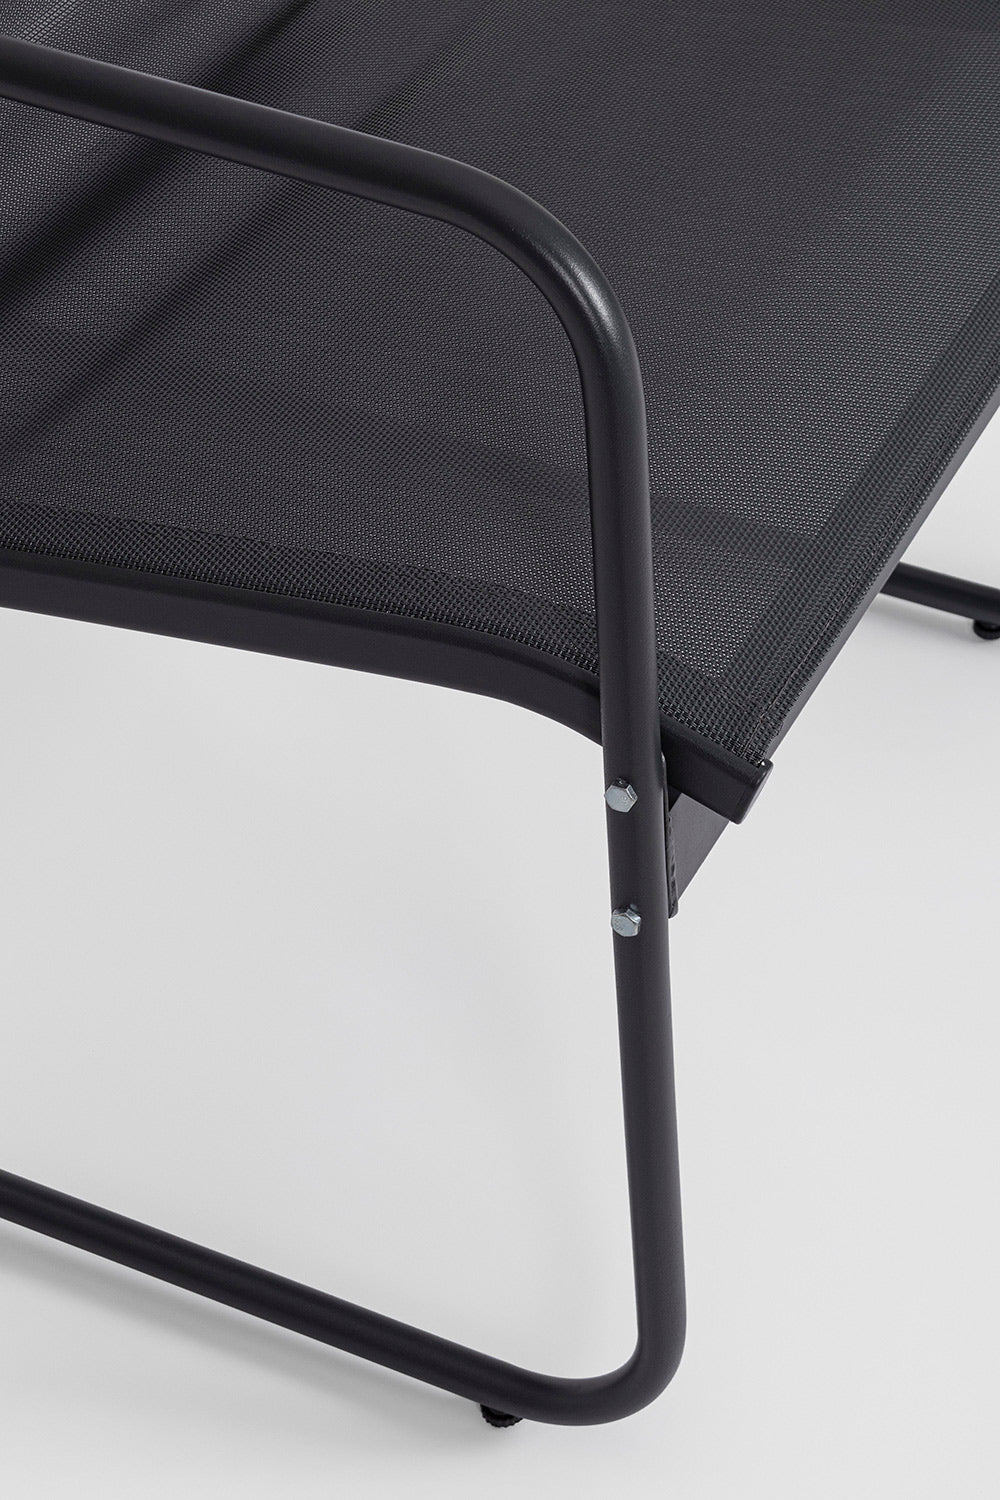 Kortárs stílusú, szénfekete színű fém kerti bútor szett székének részlete a textilén ülőfelületről.